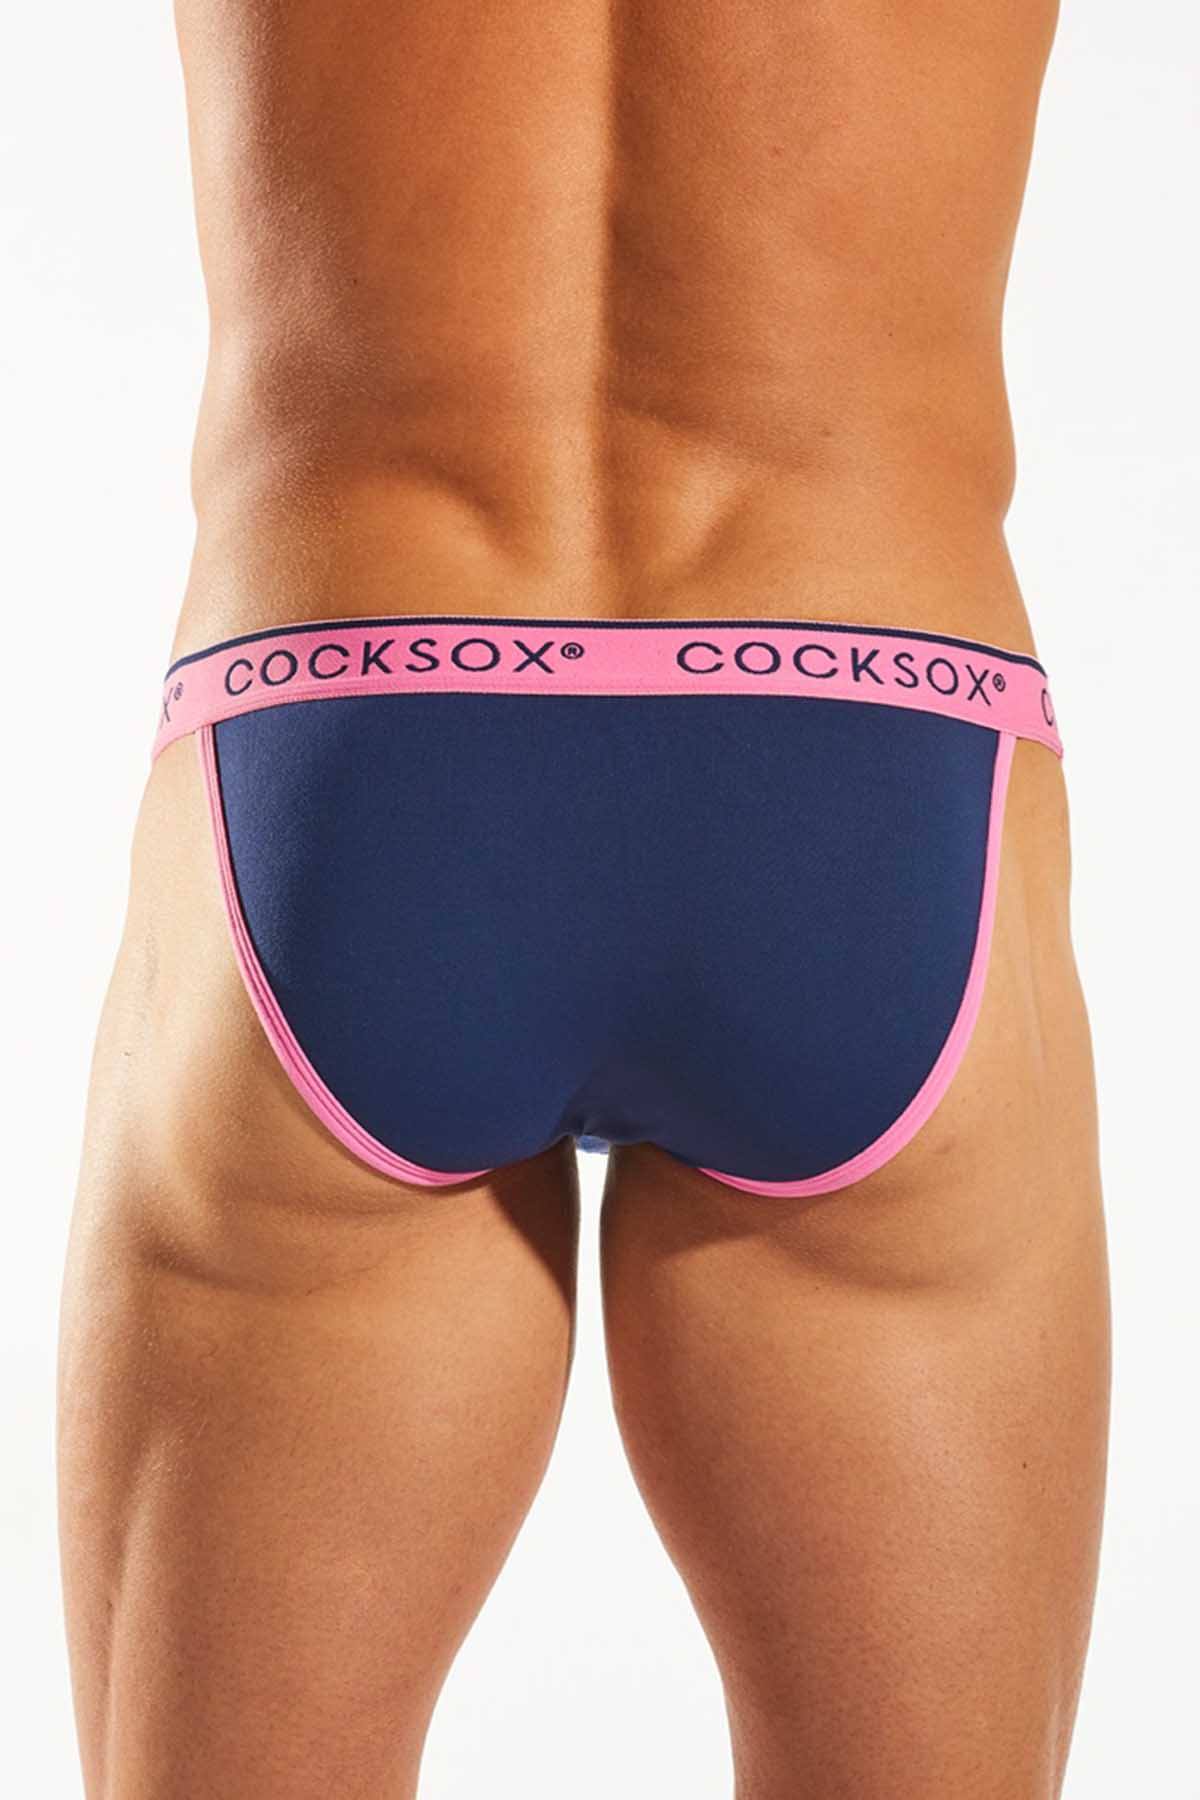 Cocksox Gothic-Blue Enhancing-Pouch Bikini Brief